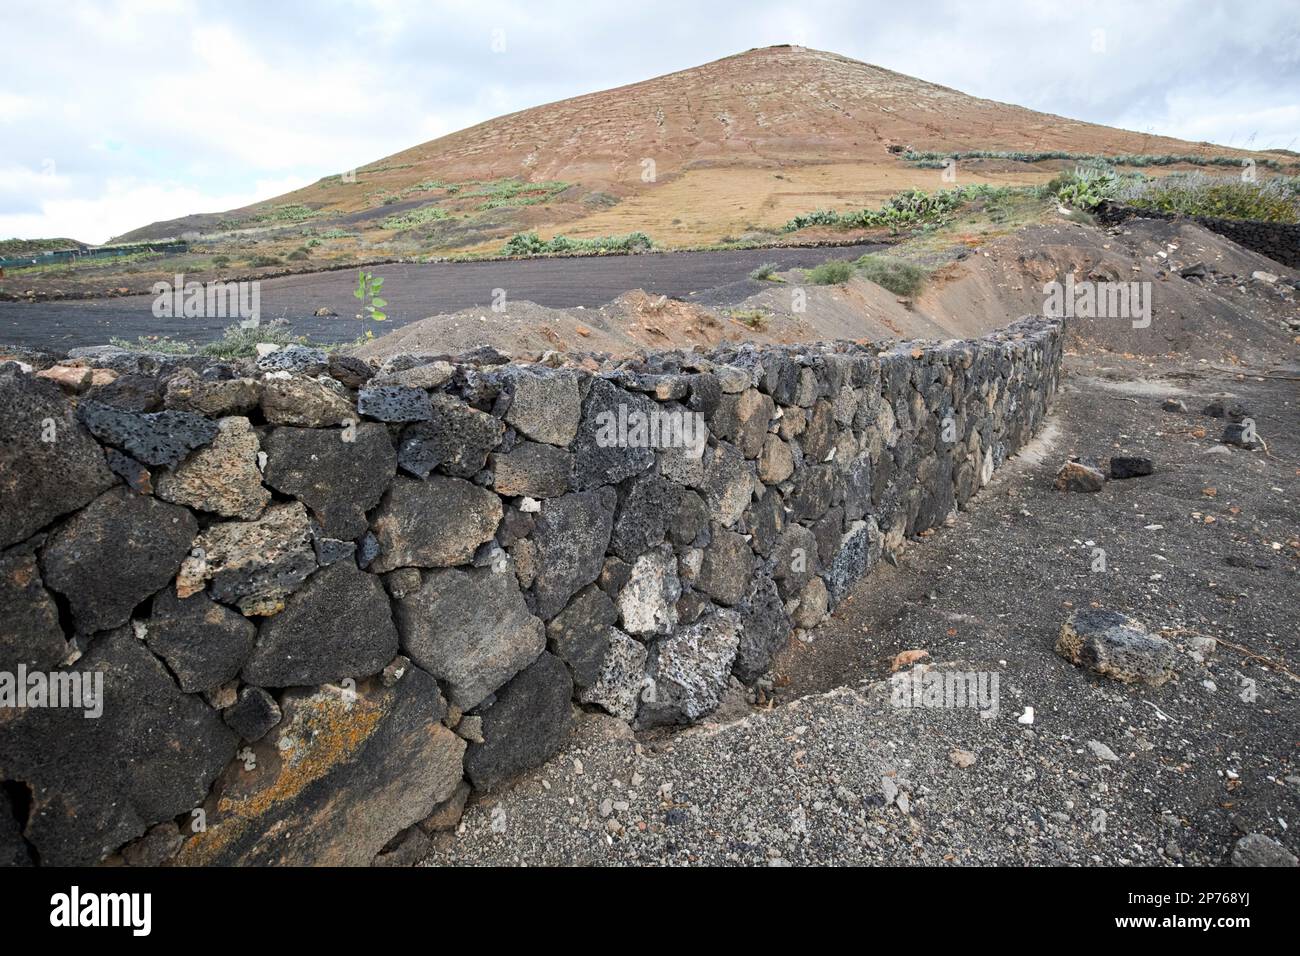 Mur de pierre sèche en pierre volcanique en construction au bord d'un champ près d'un volcan à Lanzarote, îles Canaries, Espagne Banque D'Images